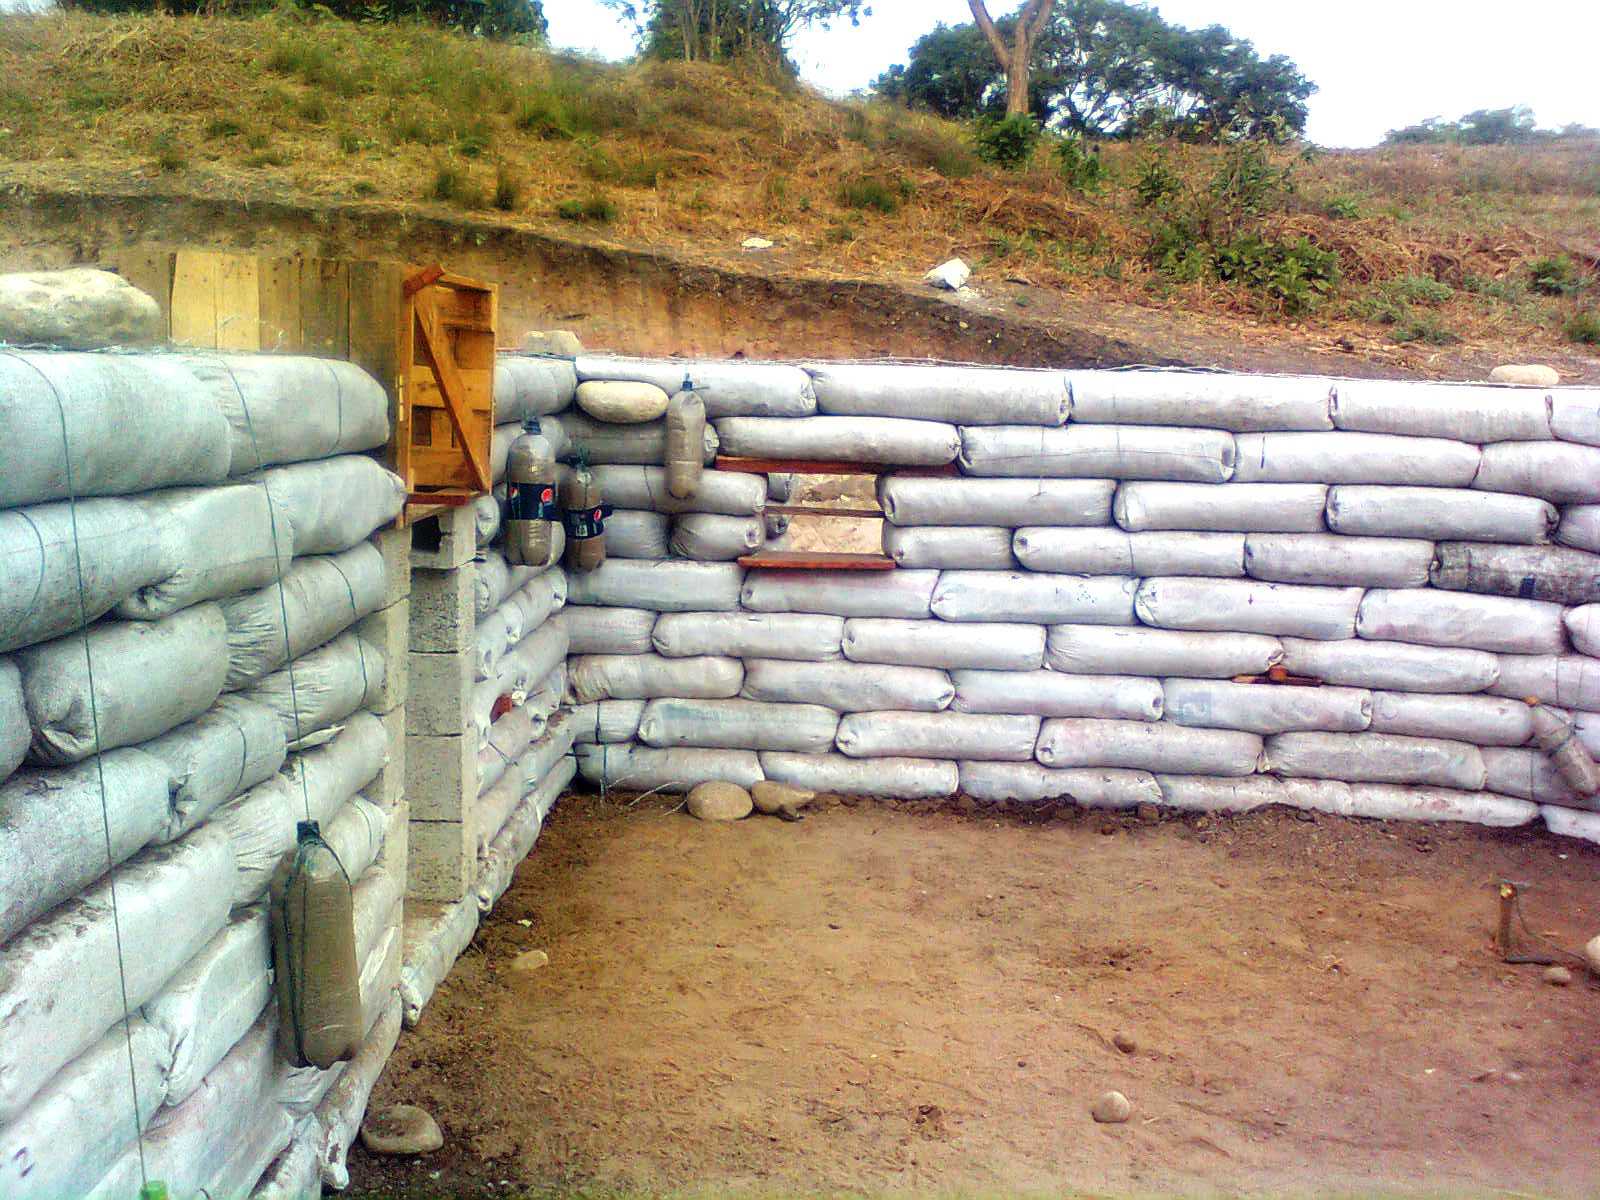 Earthbag Health Clinic in Chiapas, Mexico